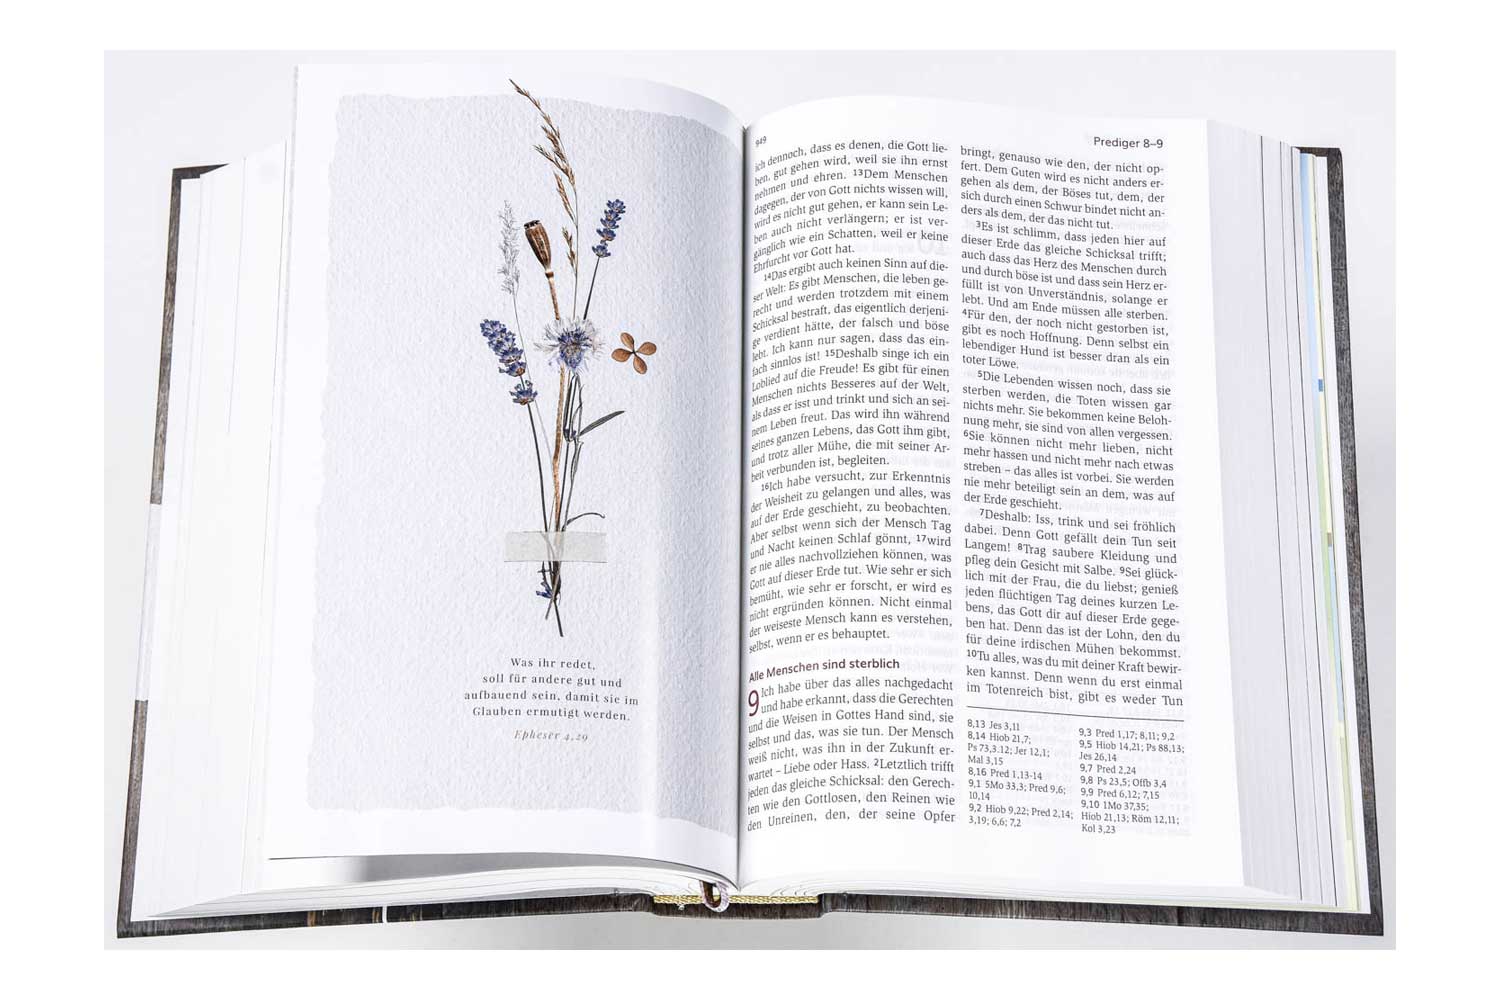 Neues Leben. Die Bibel - Standardausgabe "Blühende Worte"